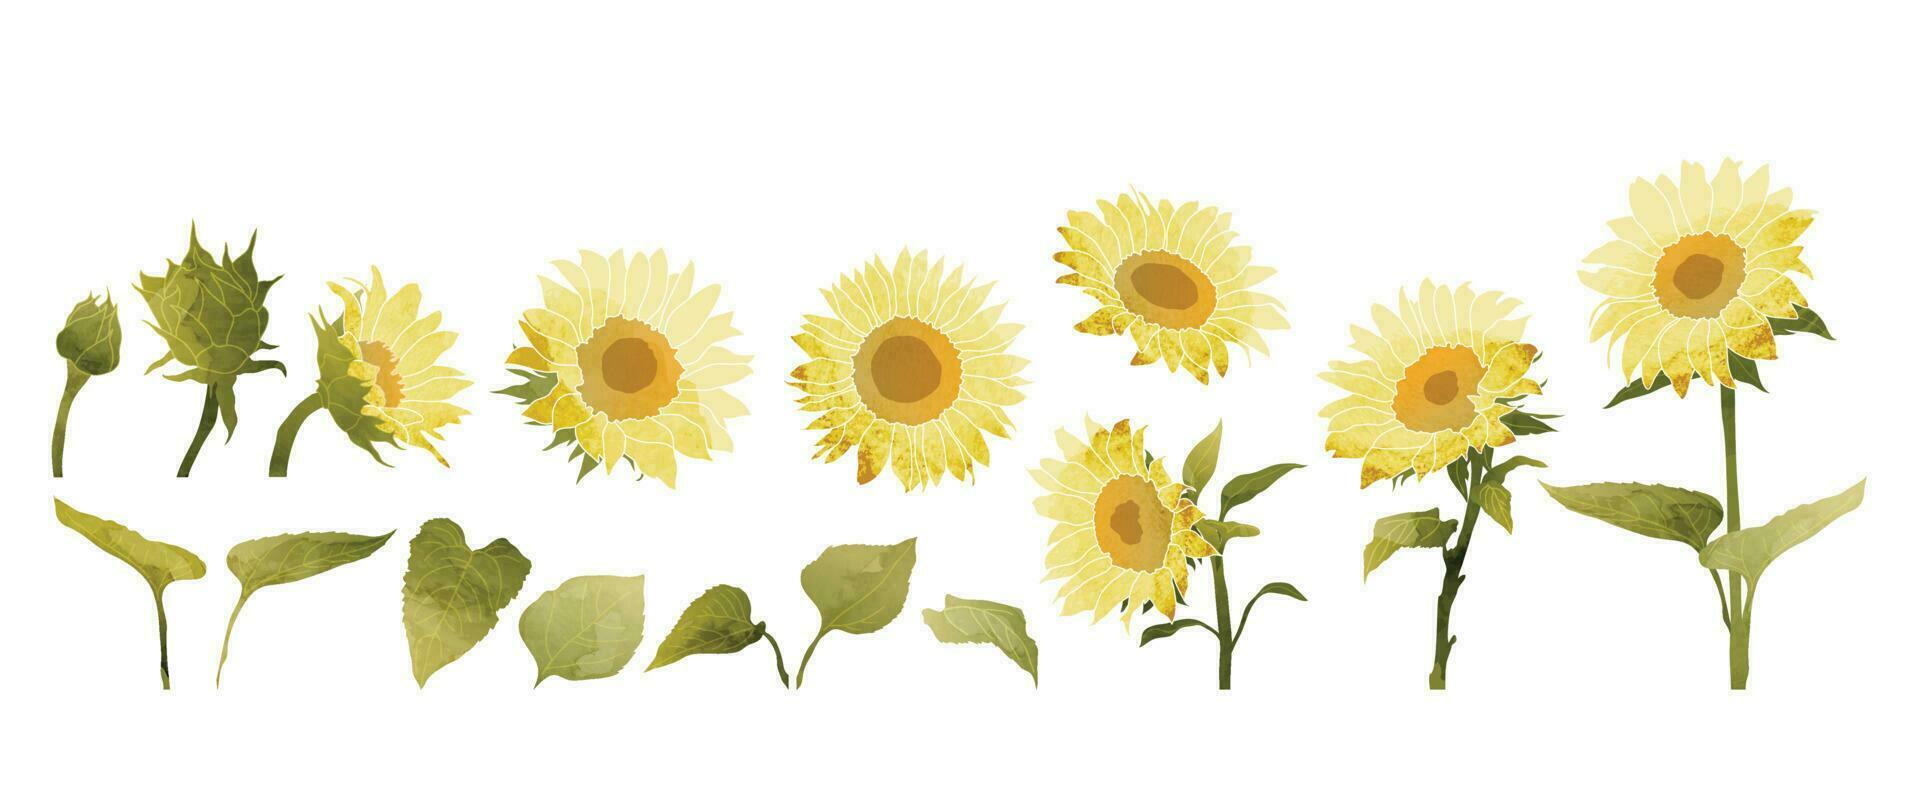 reeks van bloem vector element. verzameling van geel zonnebloem, bloeien, bladeren met borstel textuur. waterverf roos bloemen illustratie ontwerp voor logo, bruiloft, uitnodiging, decor, afdrukken.